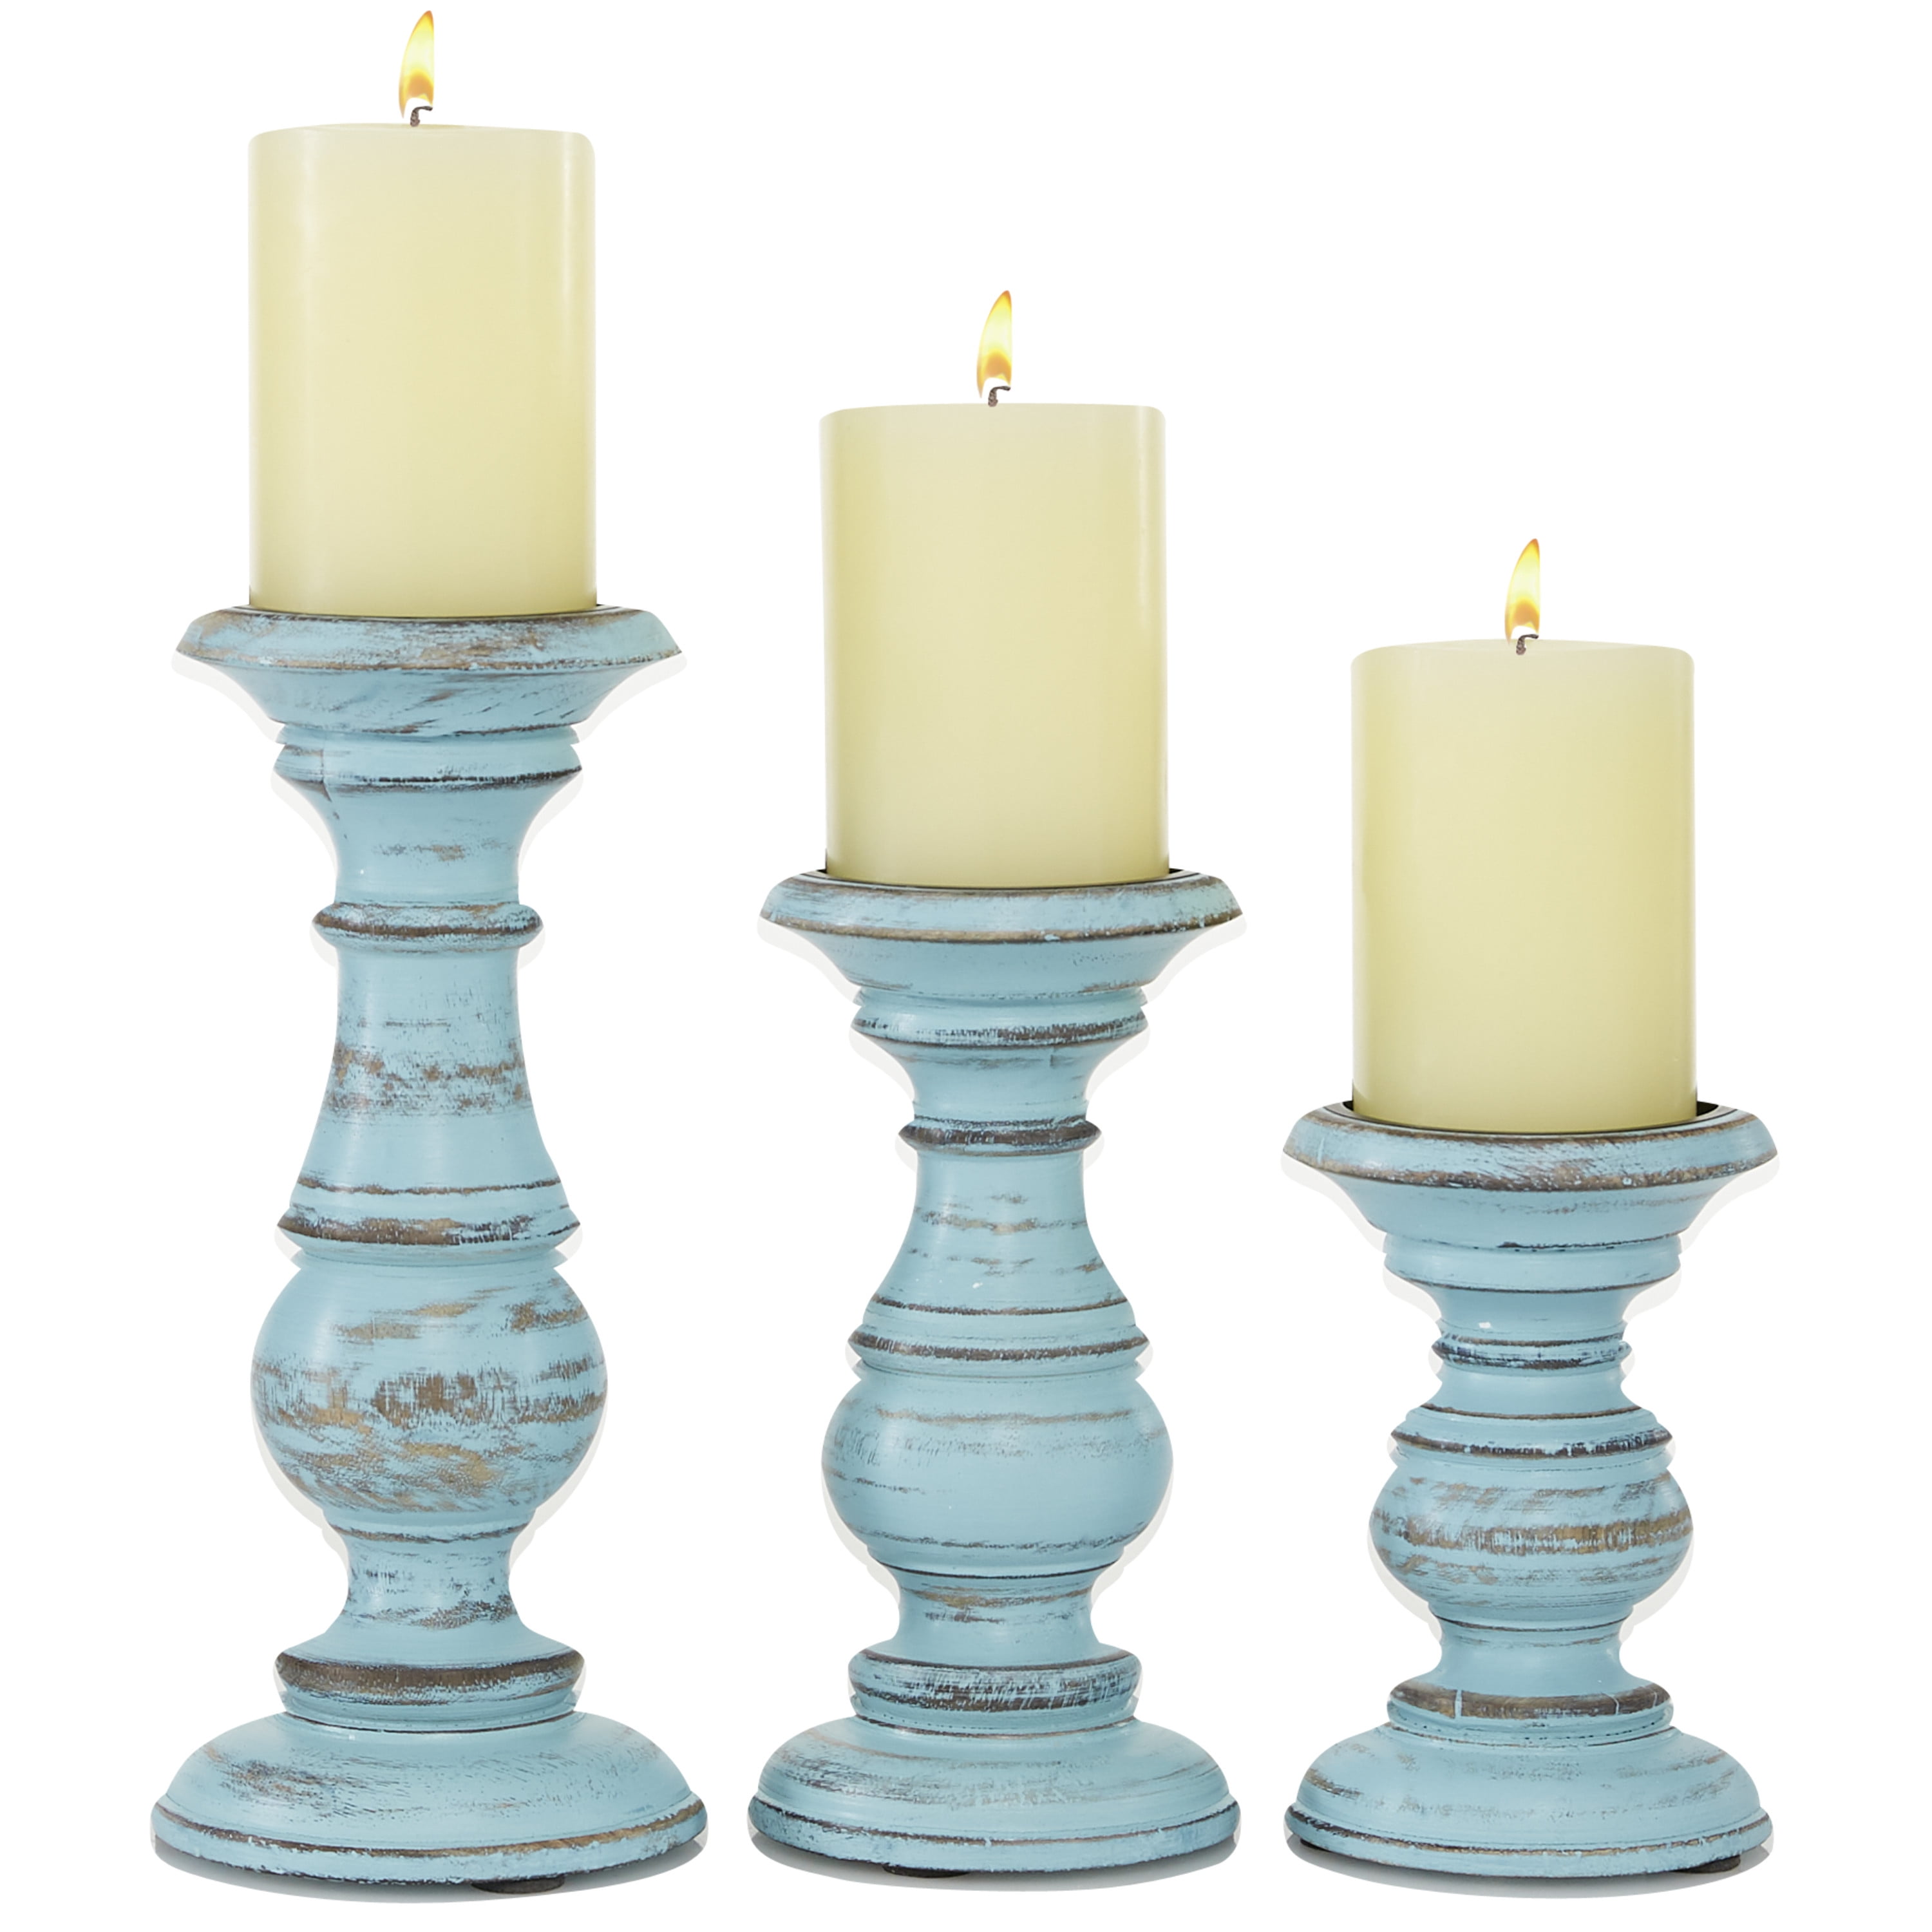 Teal Blue Rustic Vintage Tea Light Candle Holder Lantern Wedding Favor 10 15 20 